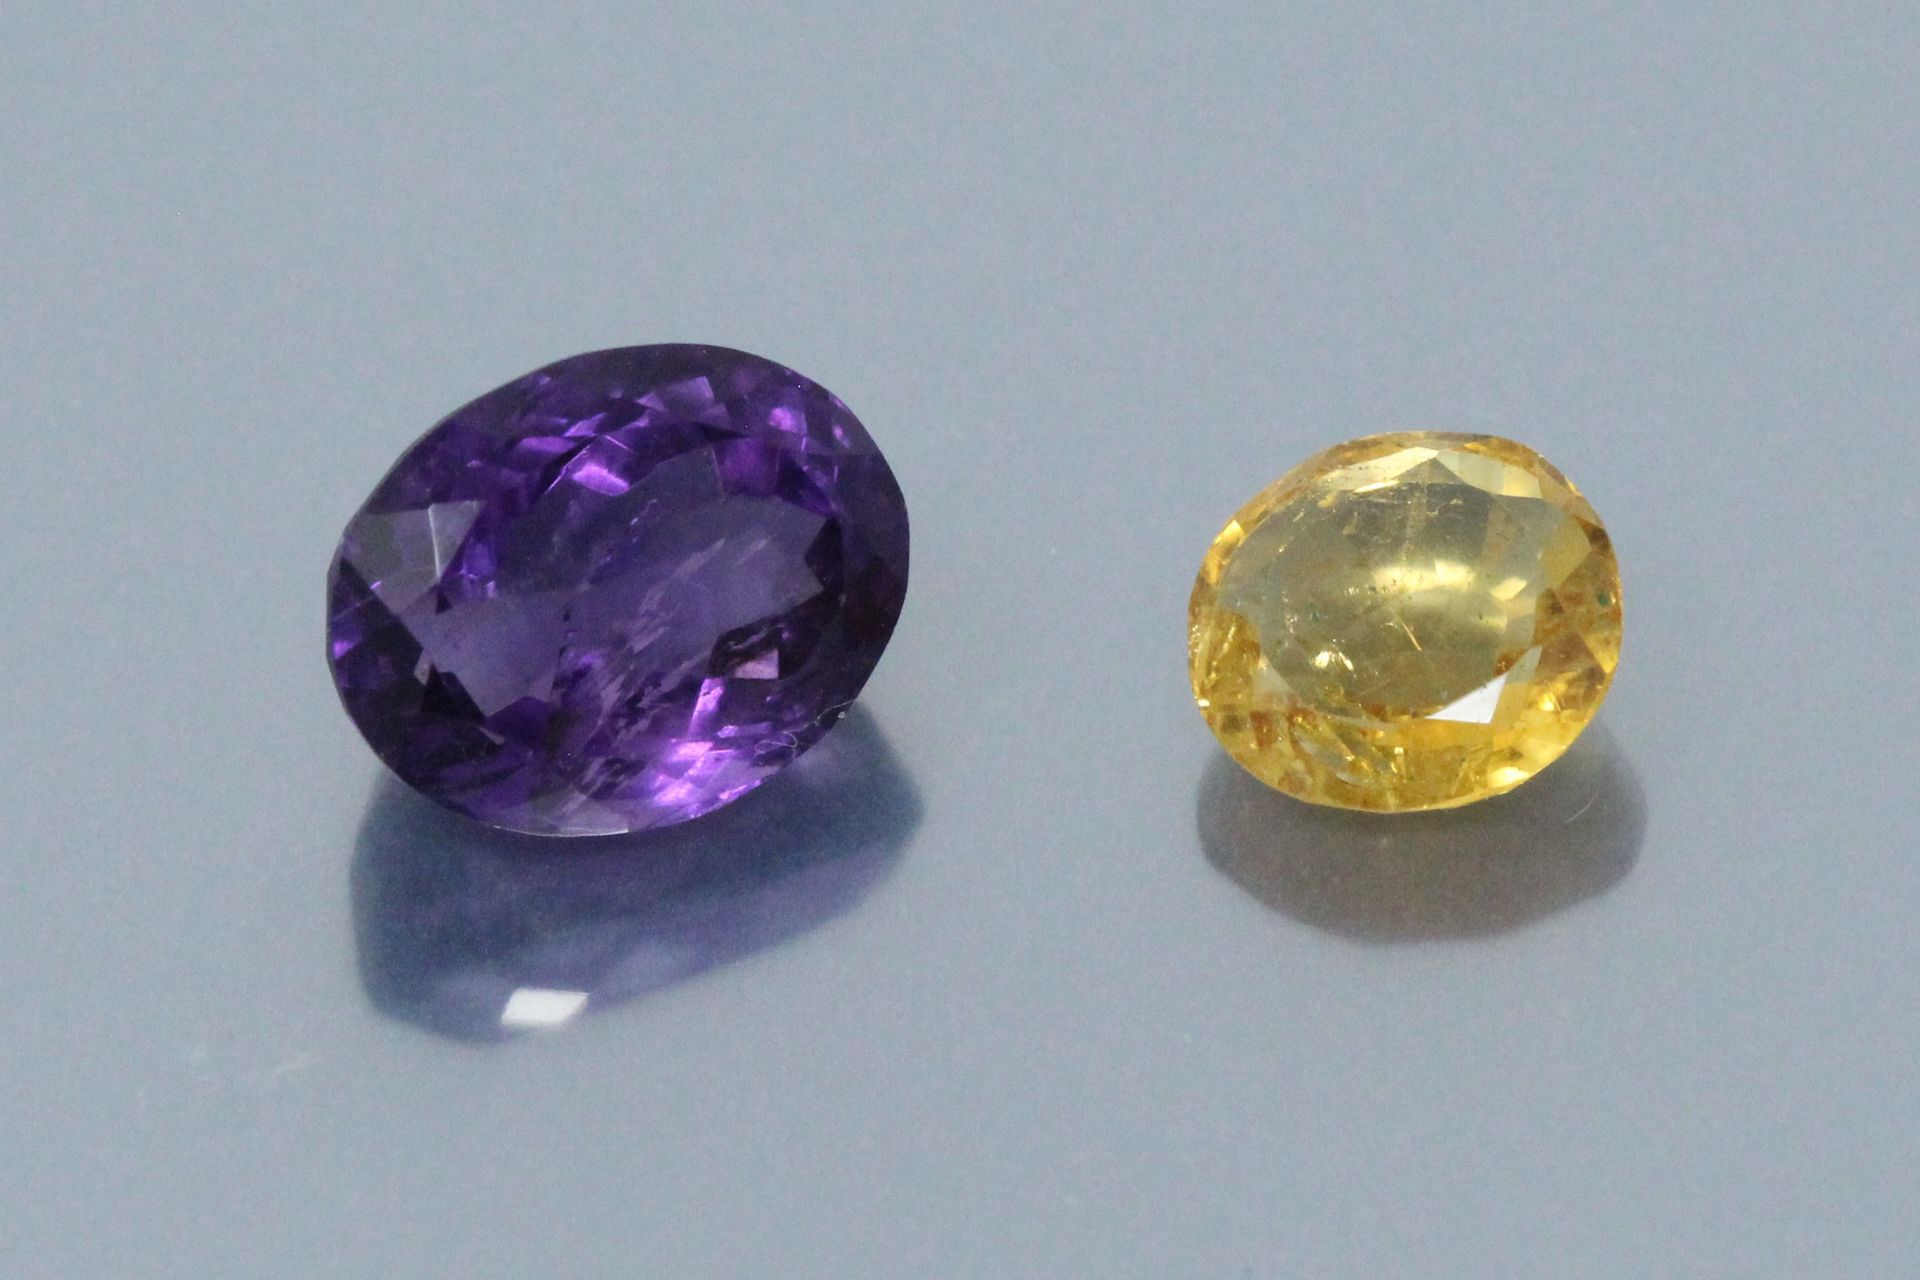 Null 本场拍卖会的两块纸上石头包括:

- 一颗椭圆形的紫水晶，附有一份GJSPC报告。重量：6.40克拉。

- 一颗圆形的黄水晶，有一份GLI报告。重量&hellip;